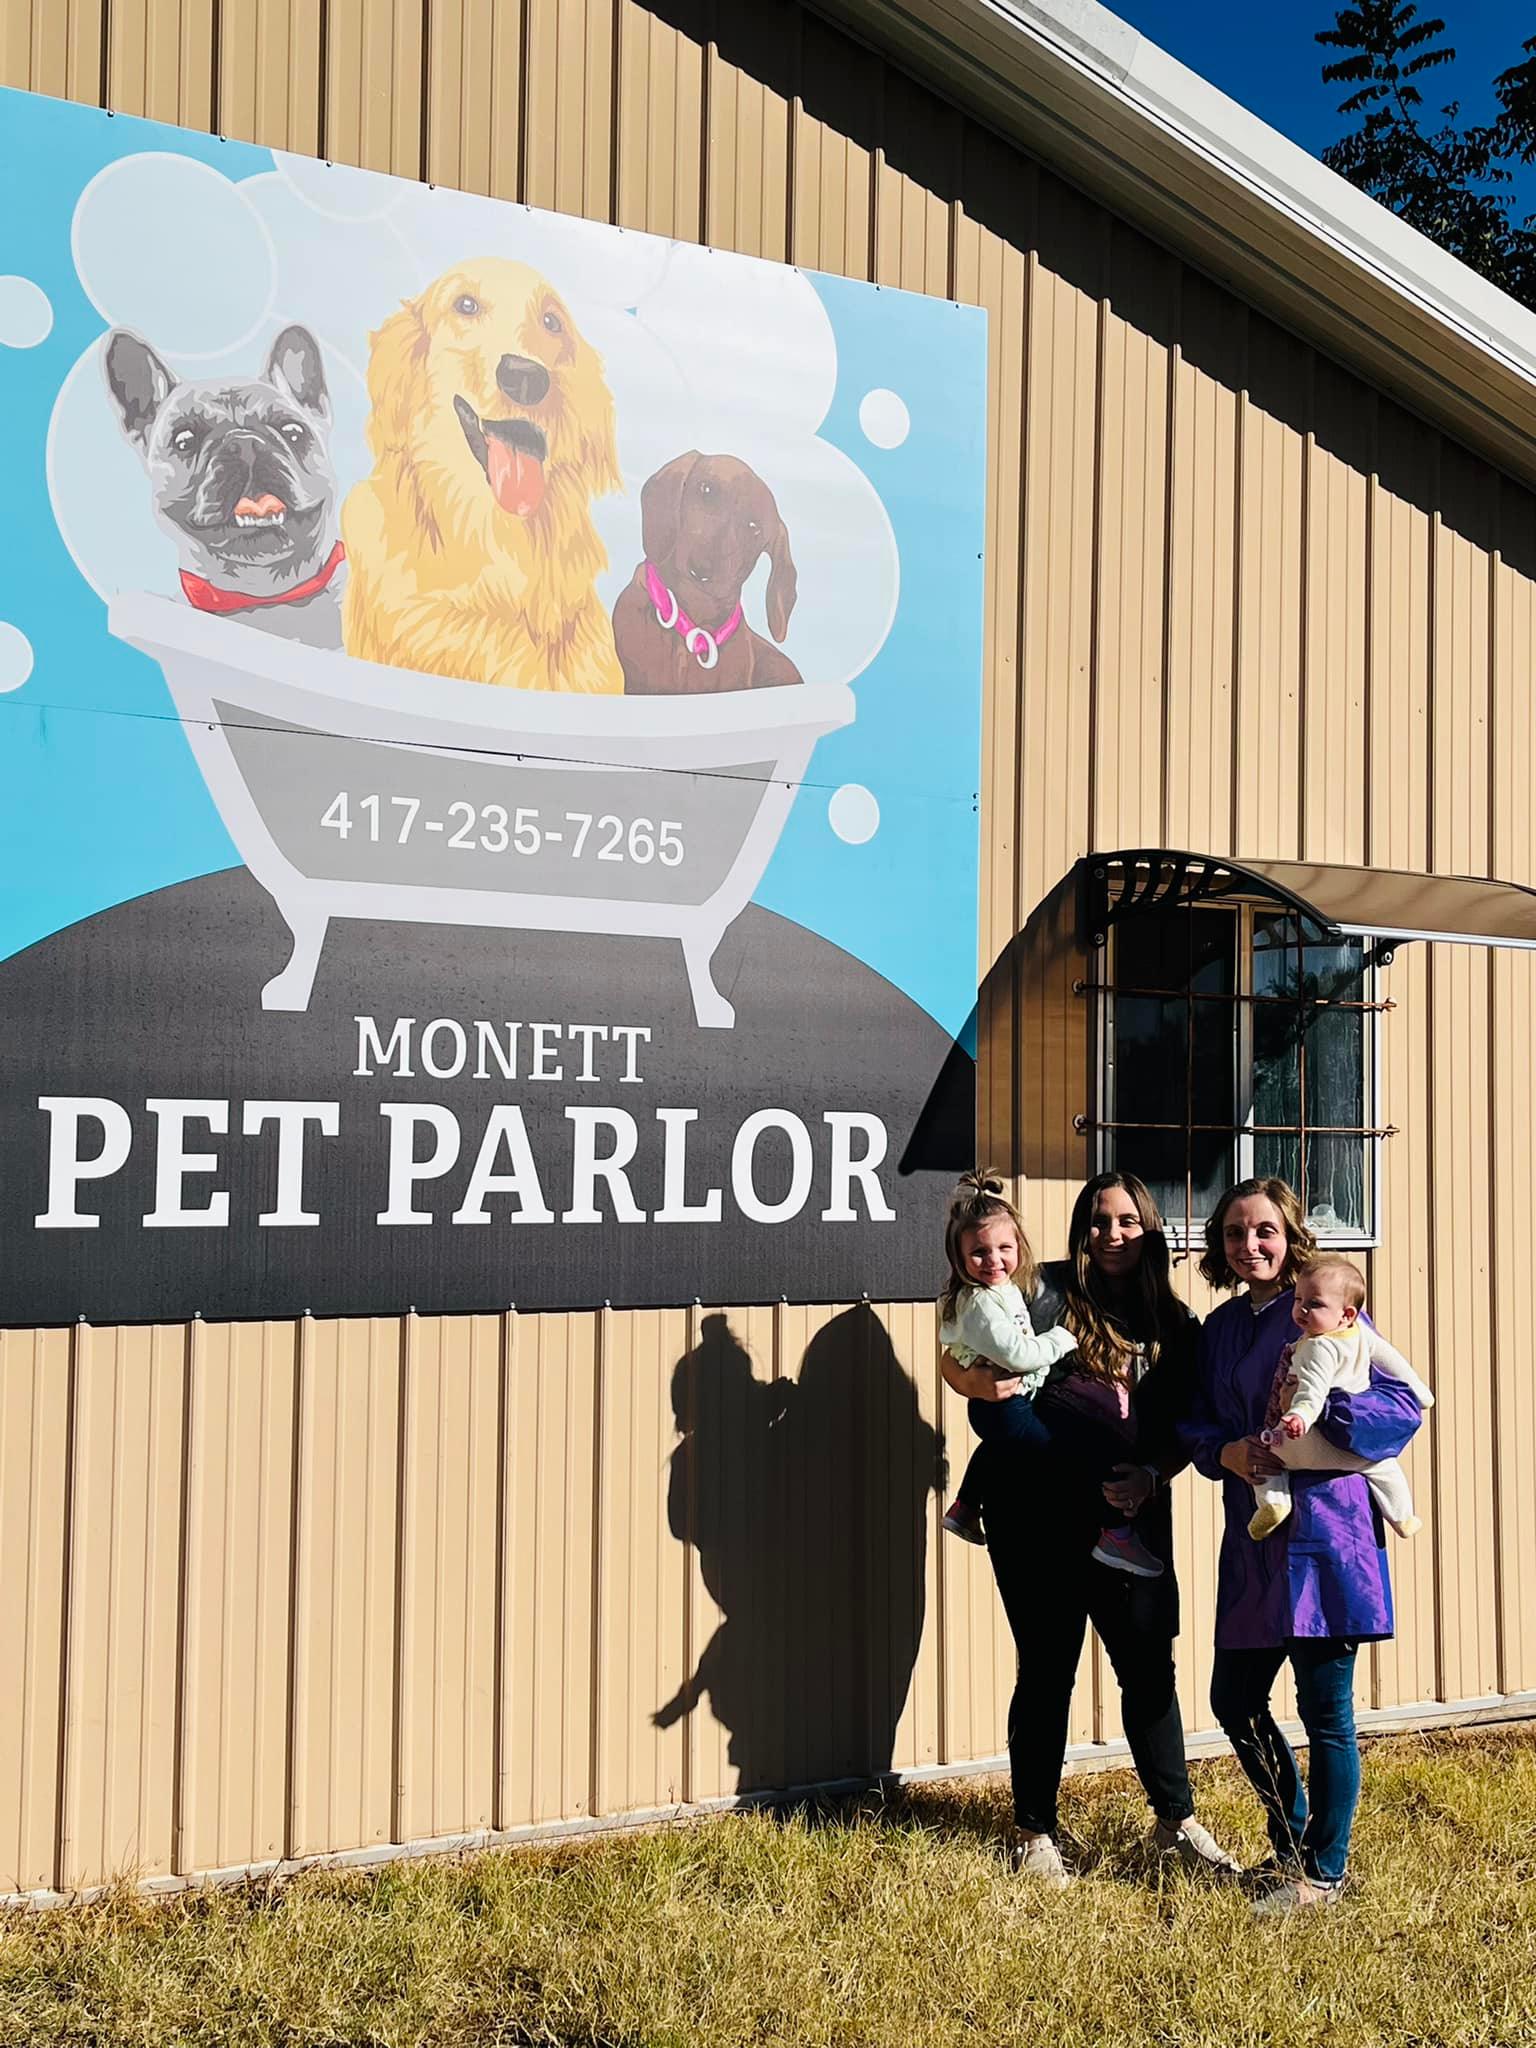 The Monett Pet Parlor 101 N Lincoln Ave, Monett Missouri 65708